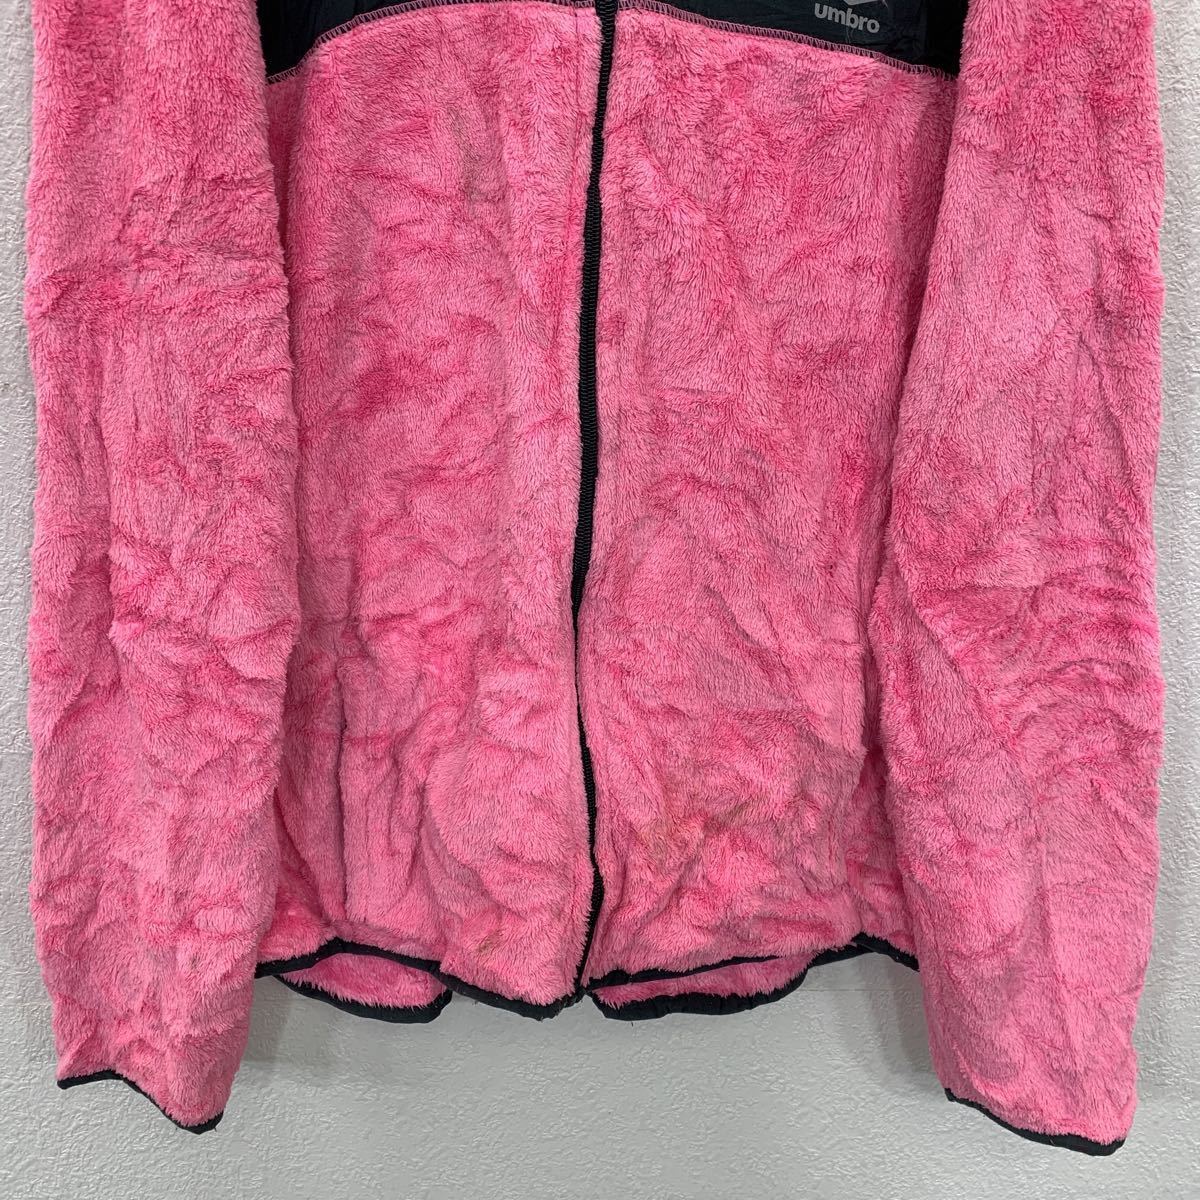 UMBRO ... подъём ... венок   пиджак   женский  L размер   ...  розовый   бу одежда ...  Америка ... t2201-3572